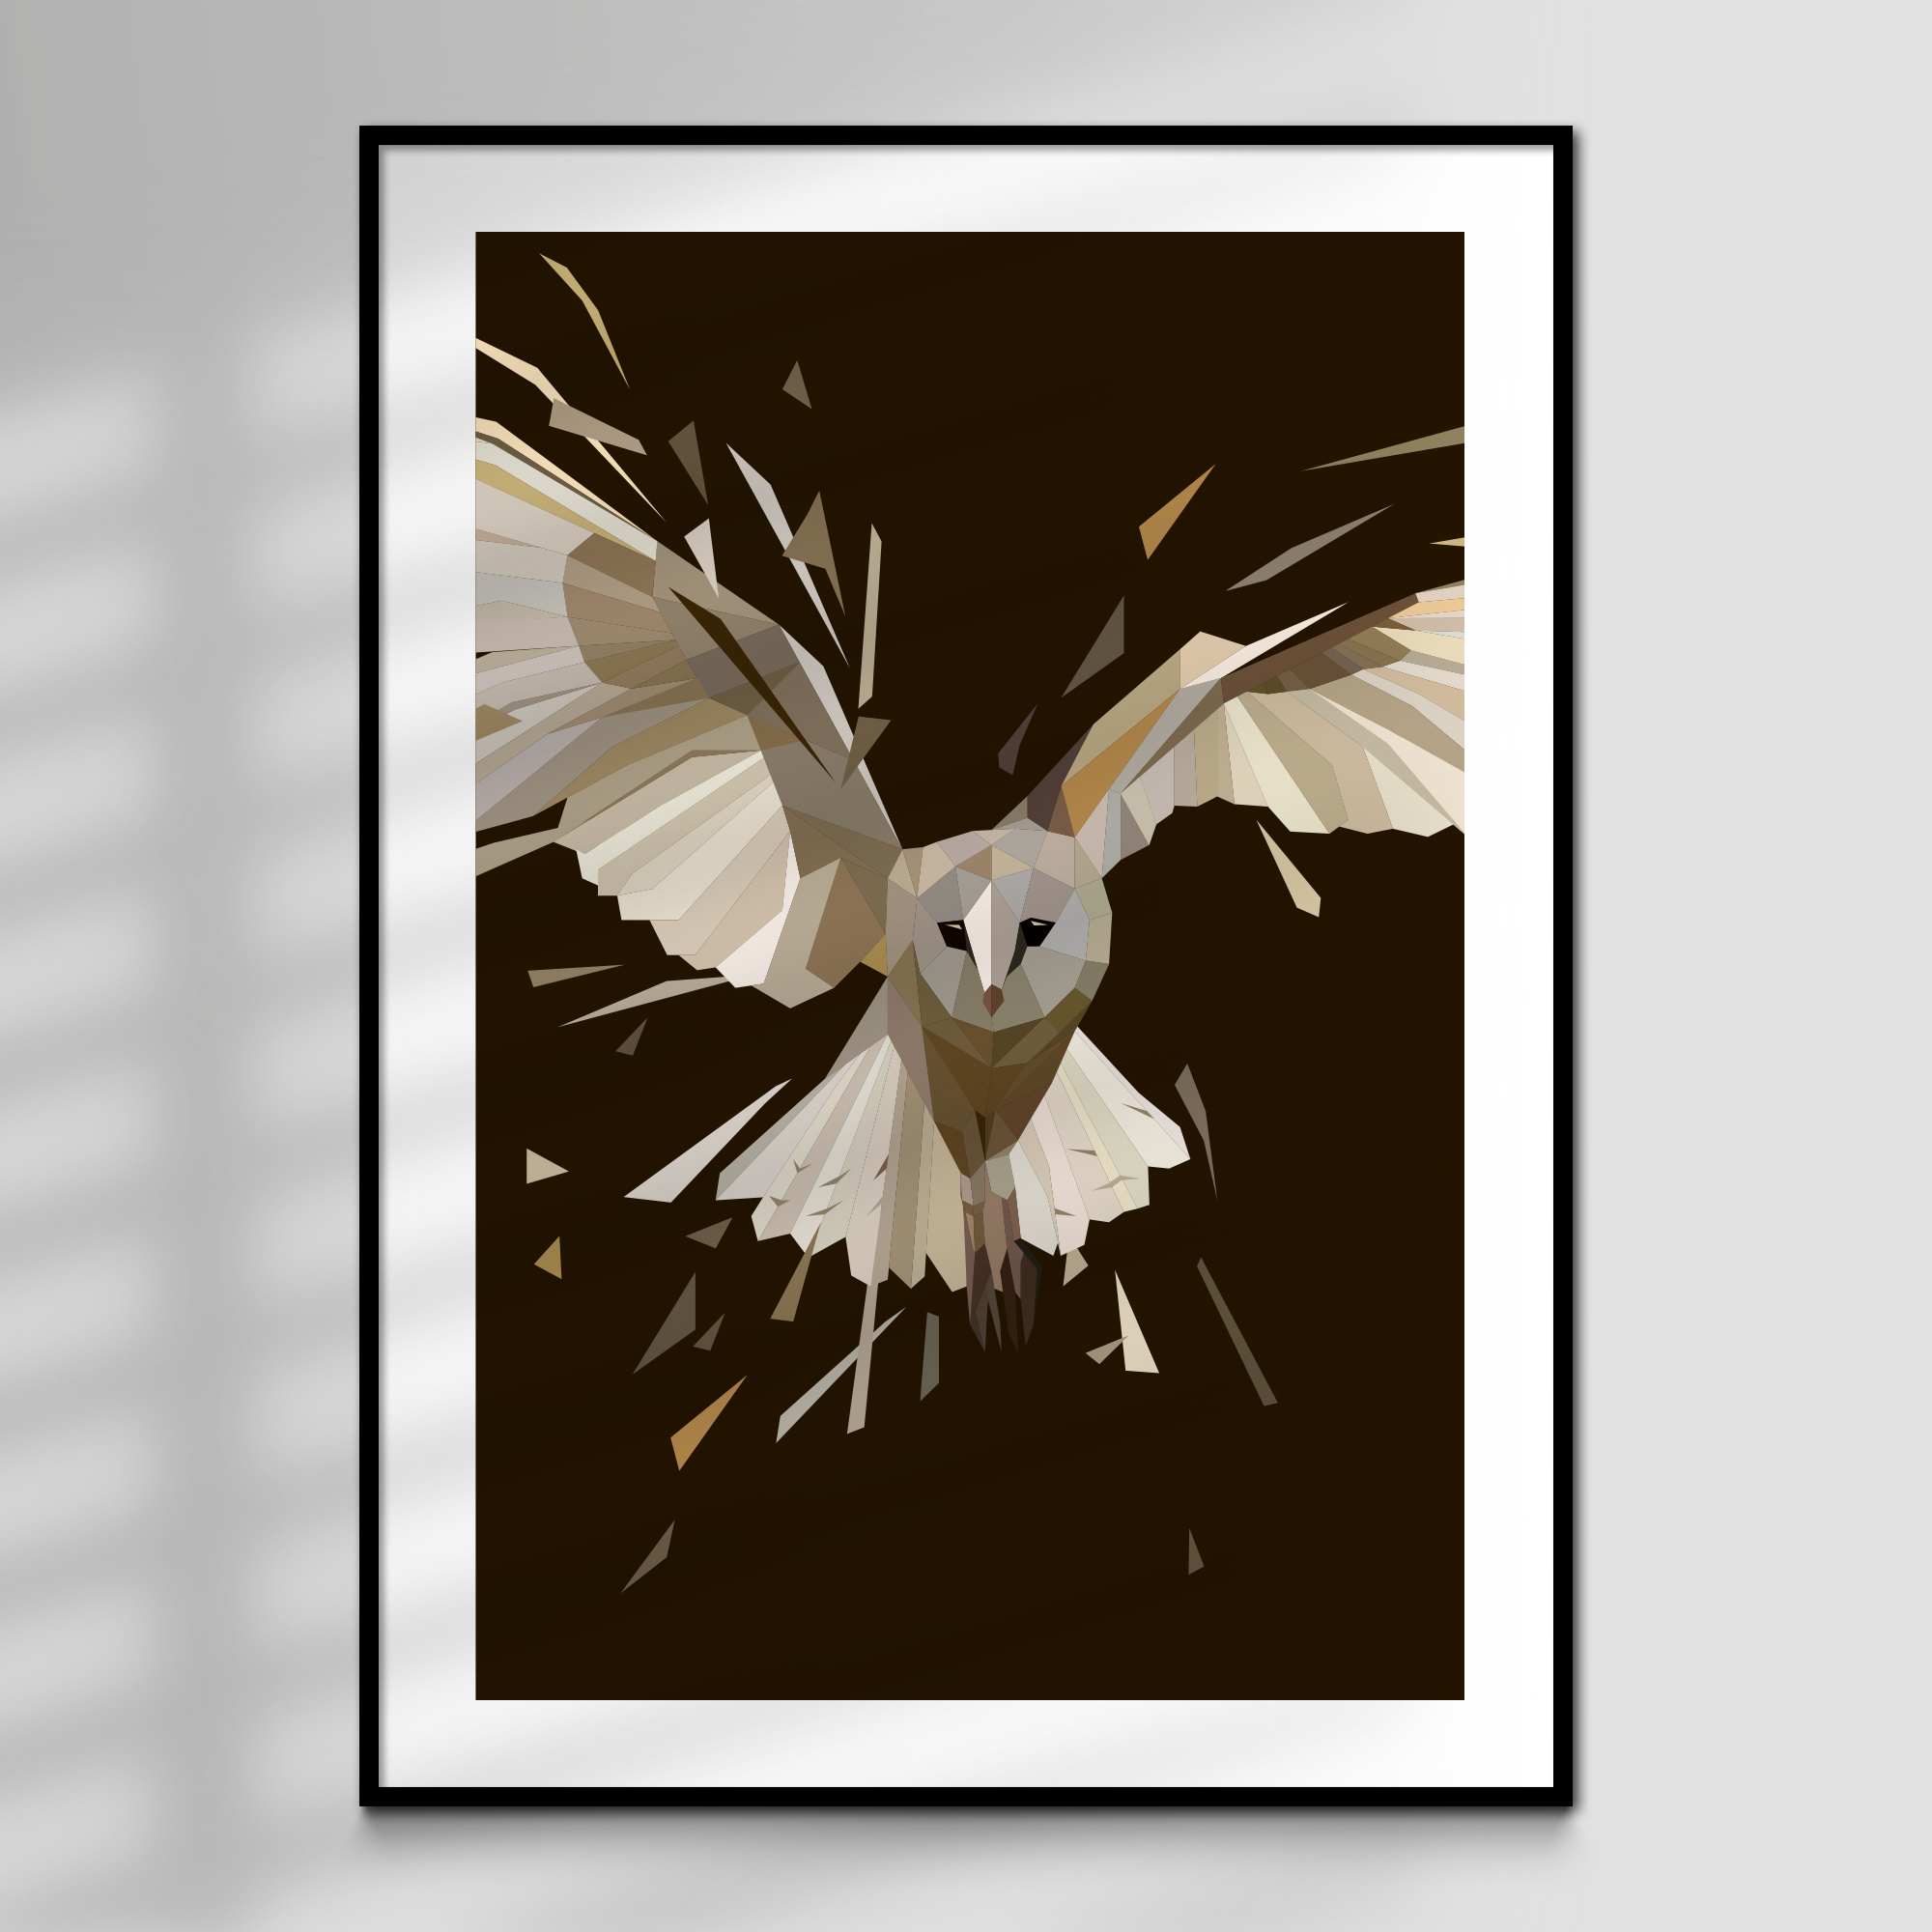 Ghost, Barn Owl High Quality Giclée Print